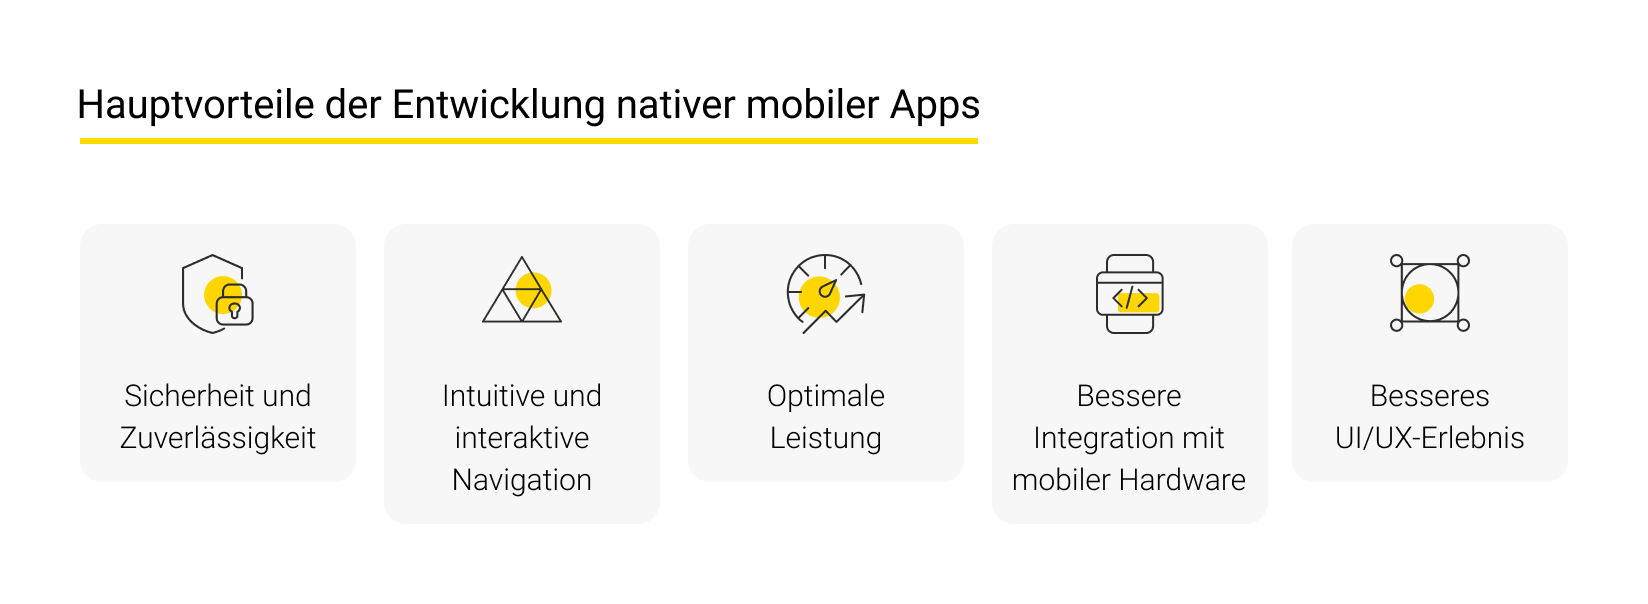 Hauptvorteile der Entwicklung nativer mobiler Apps